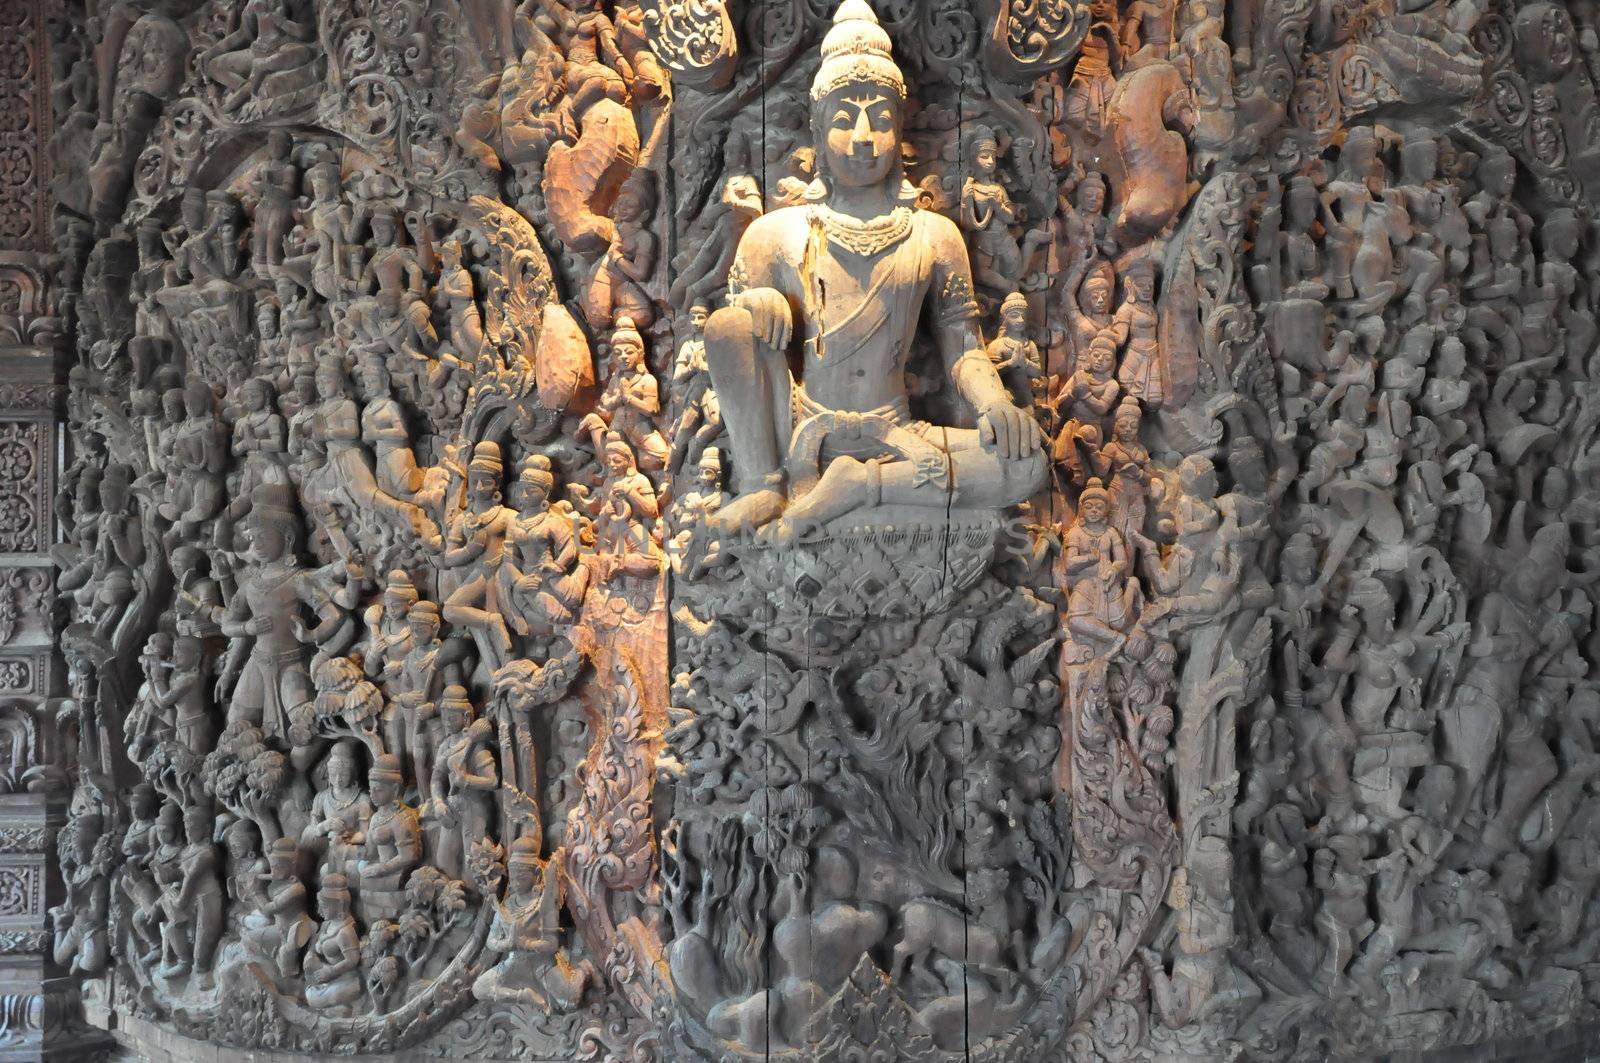 Sanctuary of Truth in Pattaya, Thailand by sainaniritu